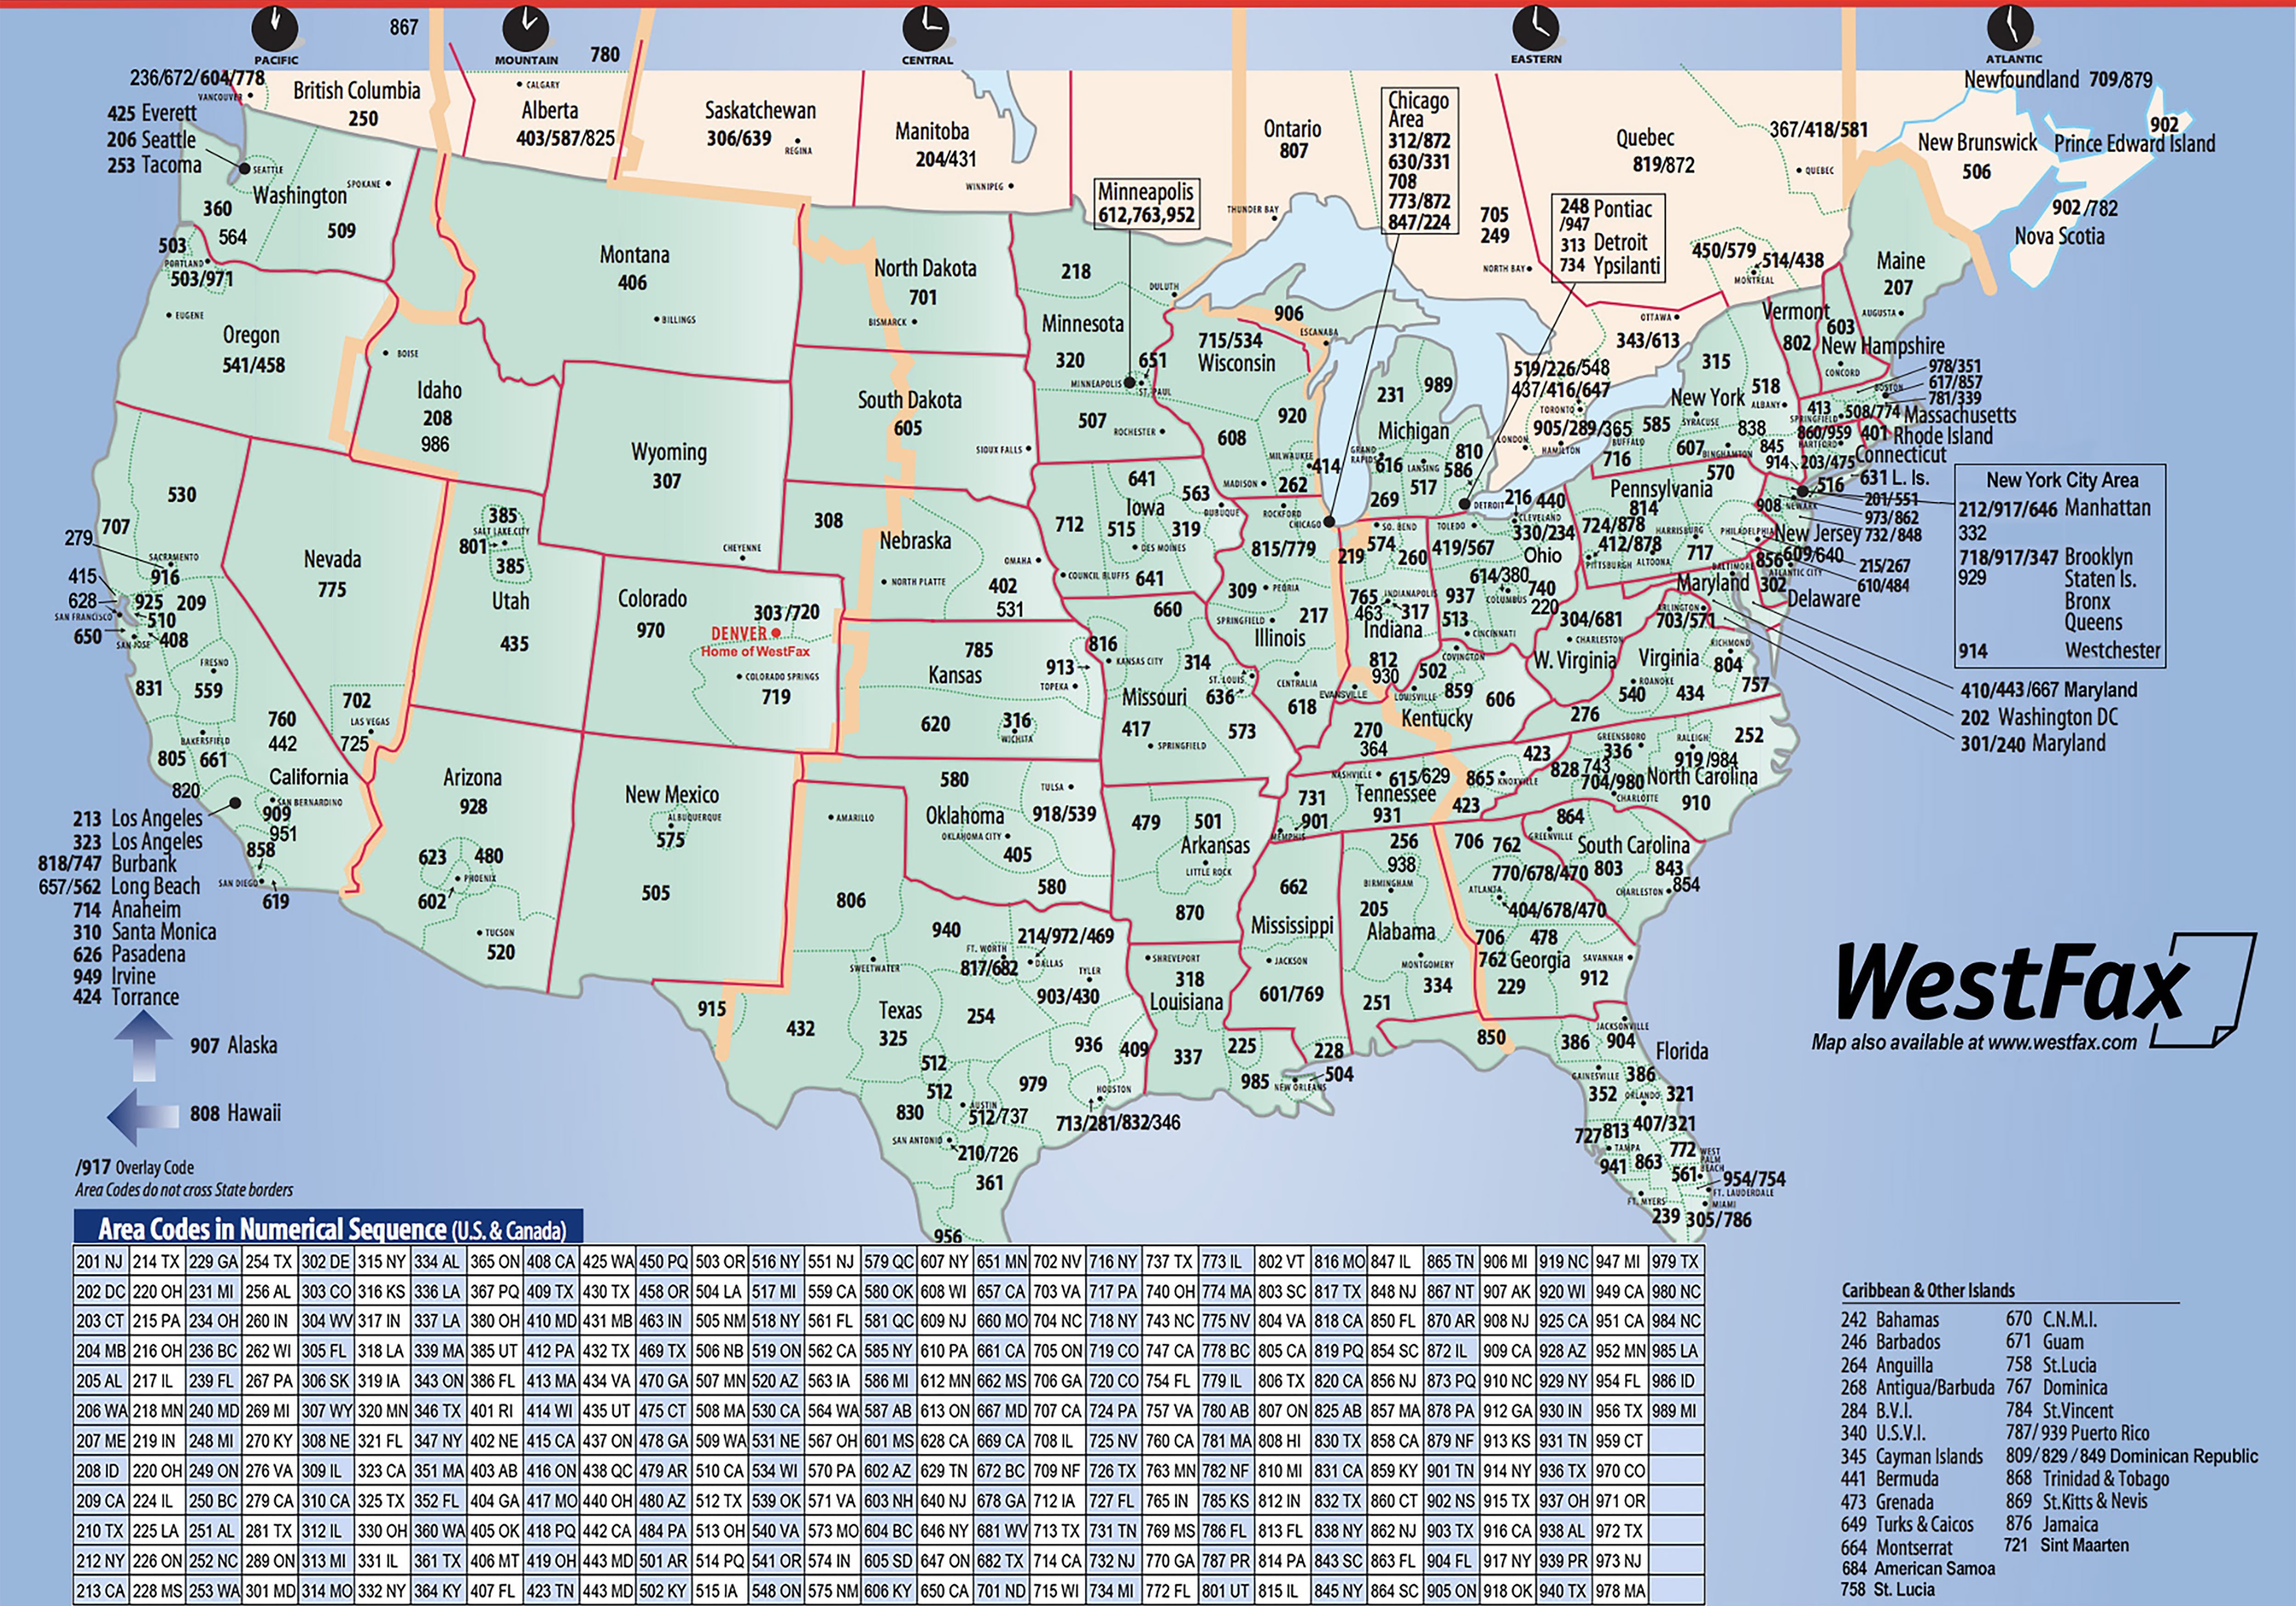 westfax area code map.